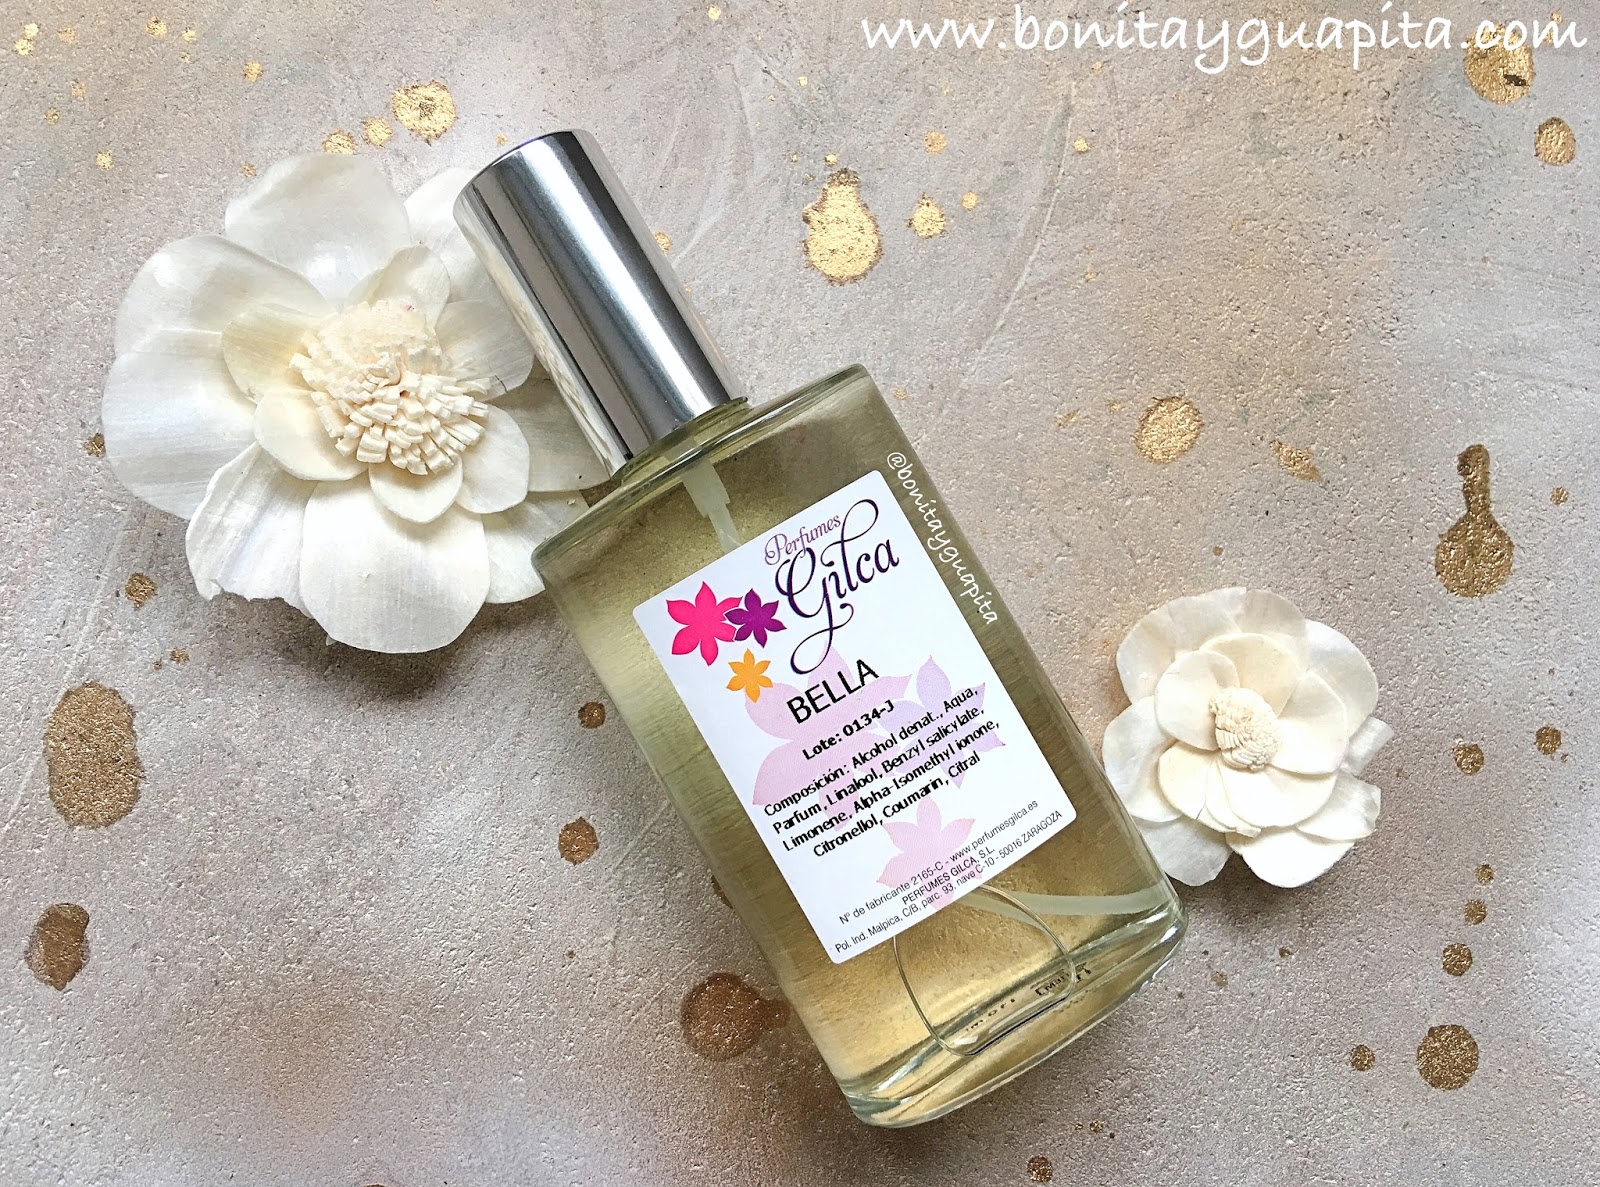 Perfumes Gilca: y mis favoritos - Blog de belleza y maquillaje - Bonita y Guapita